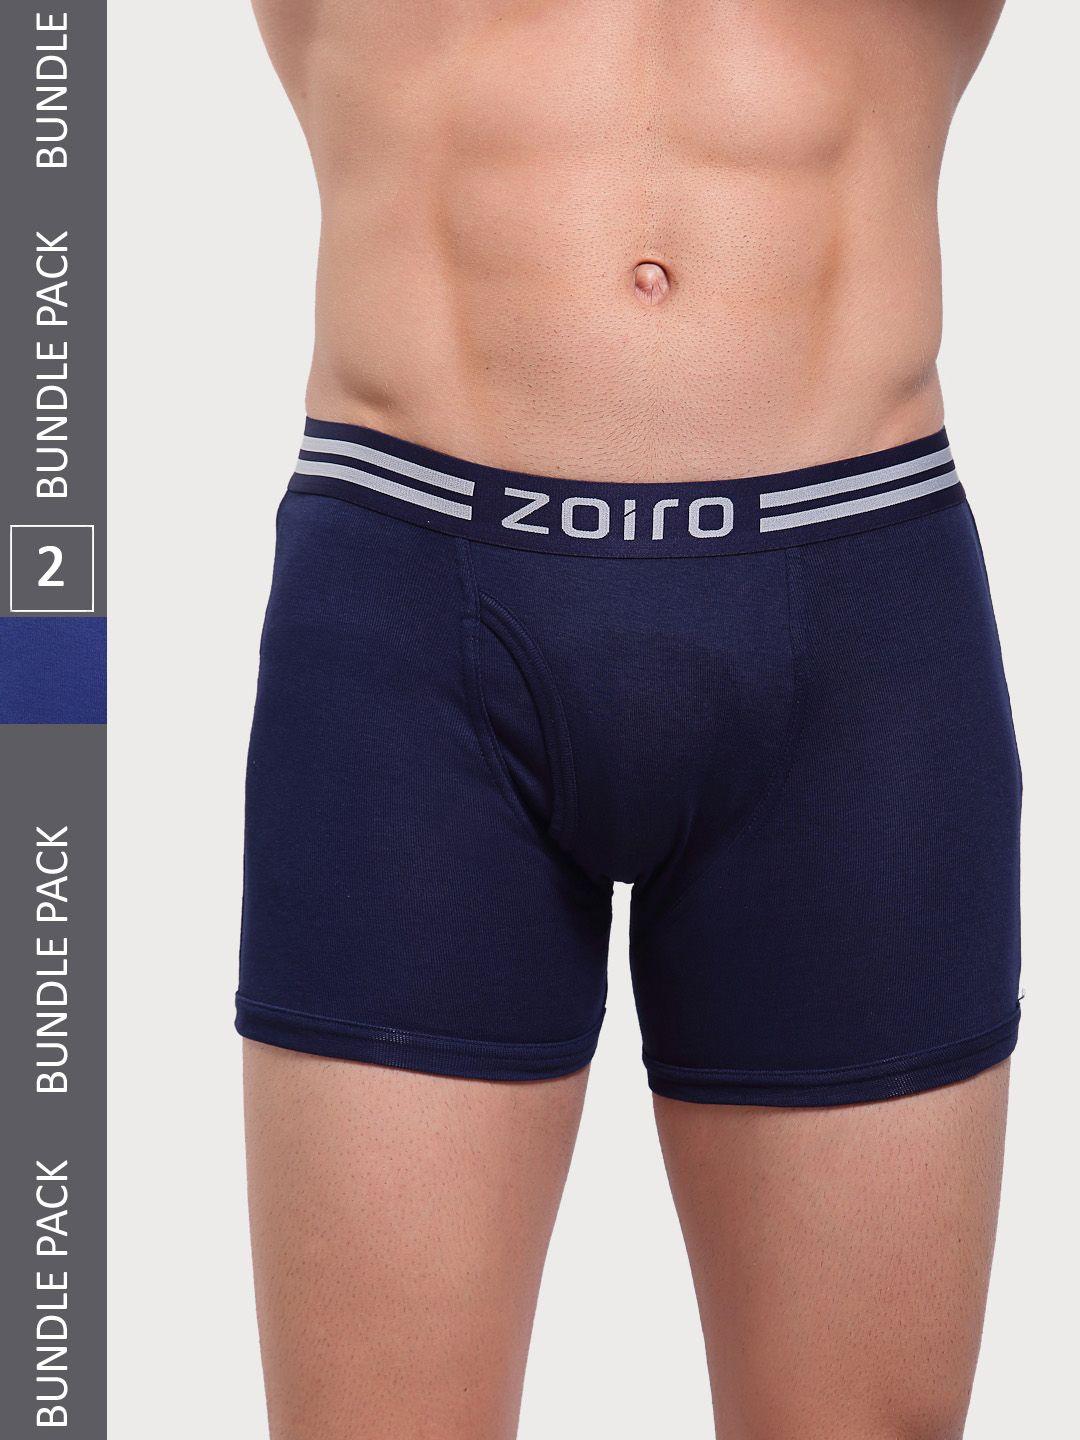 zoiro pack of 2 logo printed detail trunks